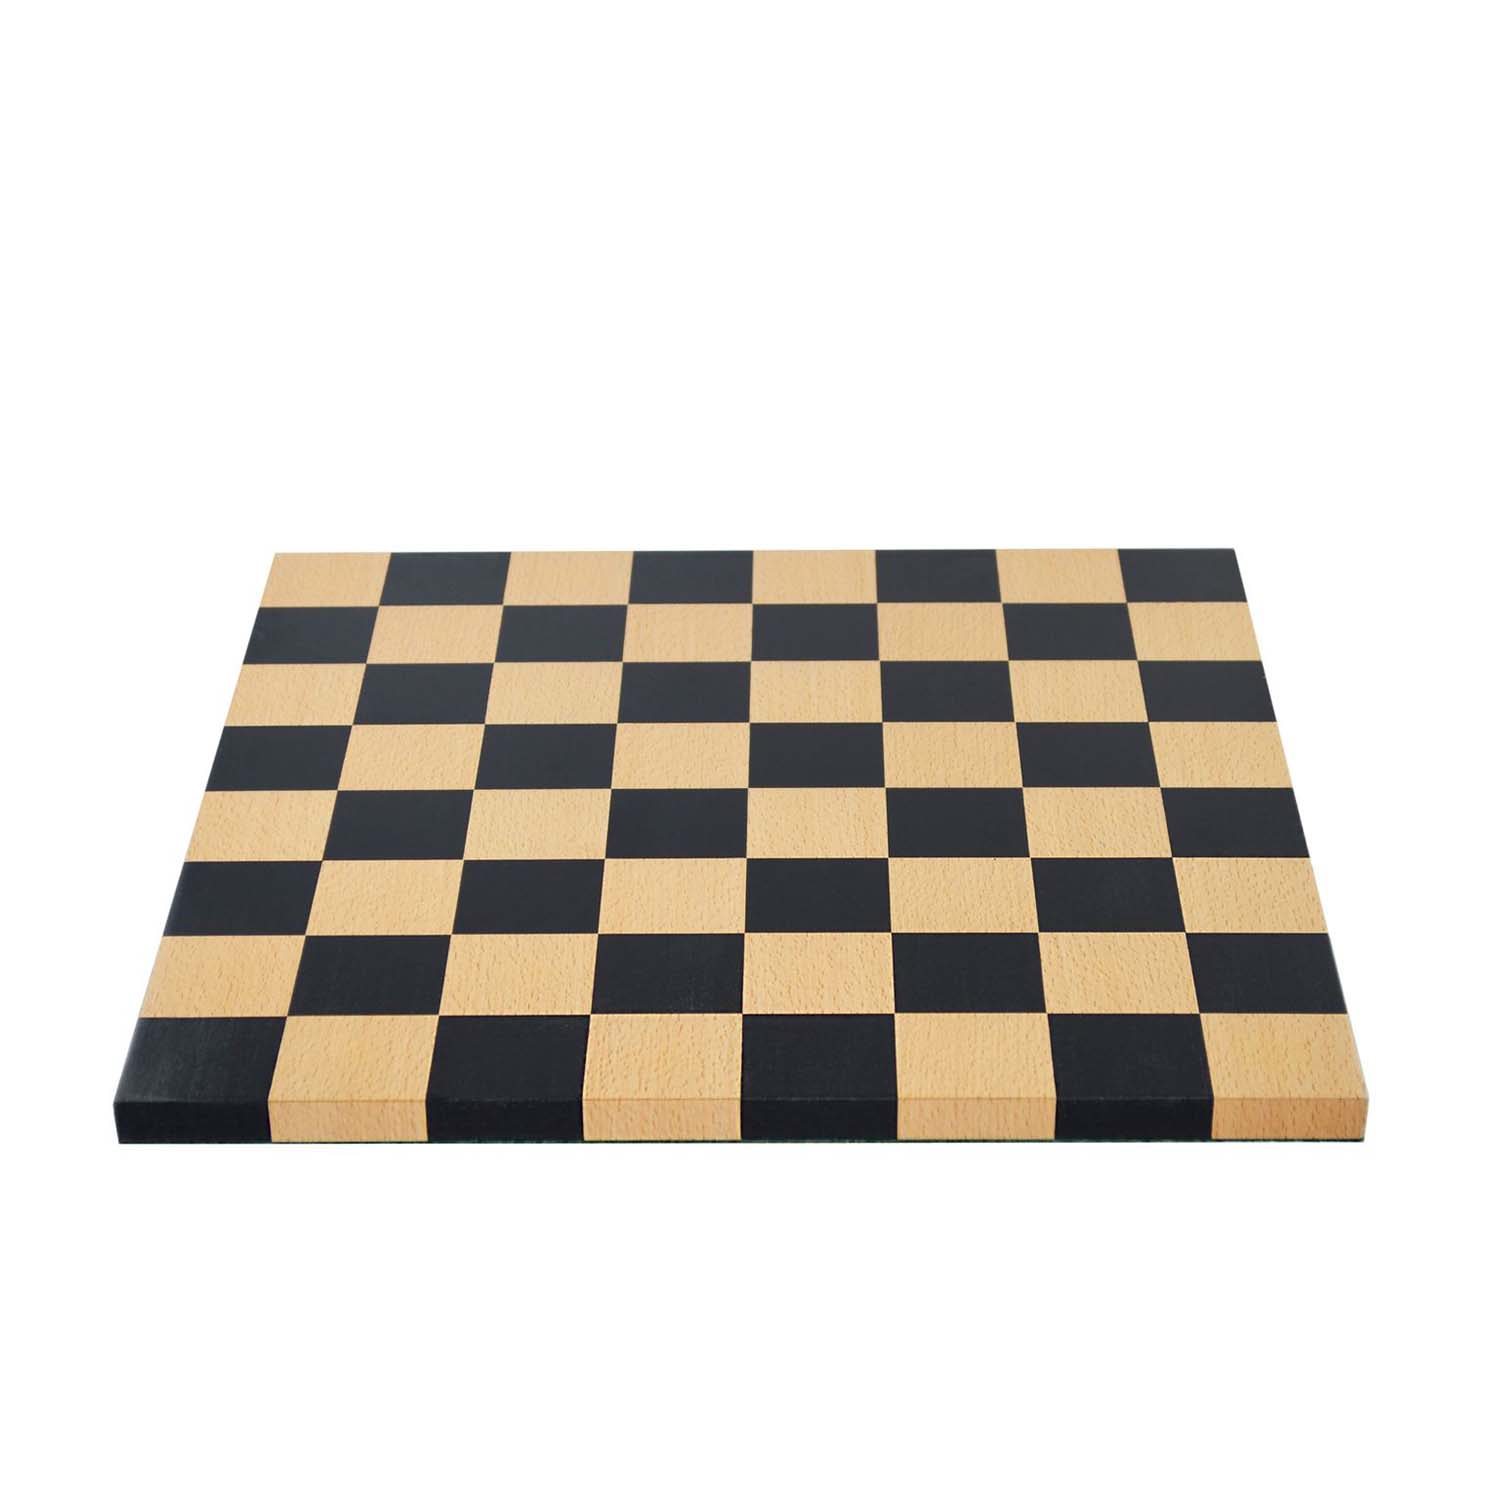 Изображение Шахматная доска работы Ман Рэя 